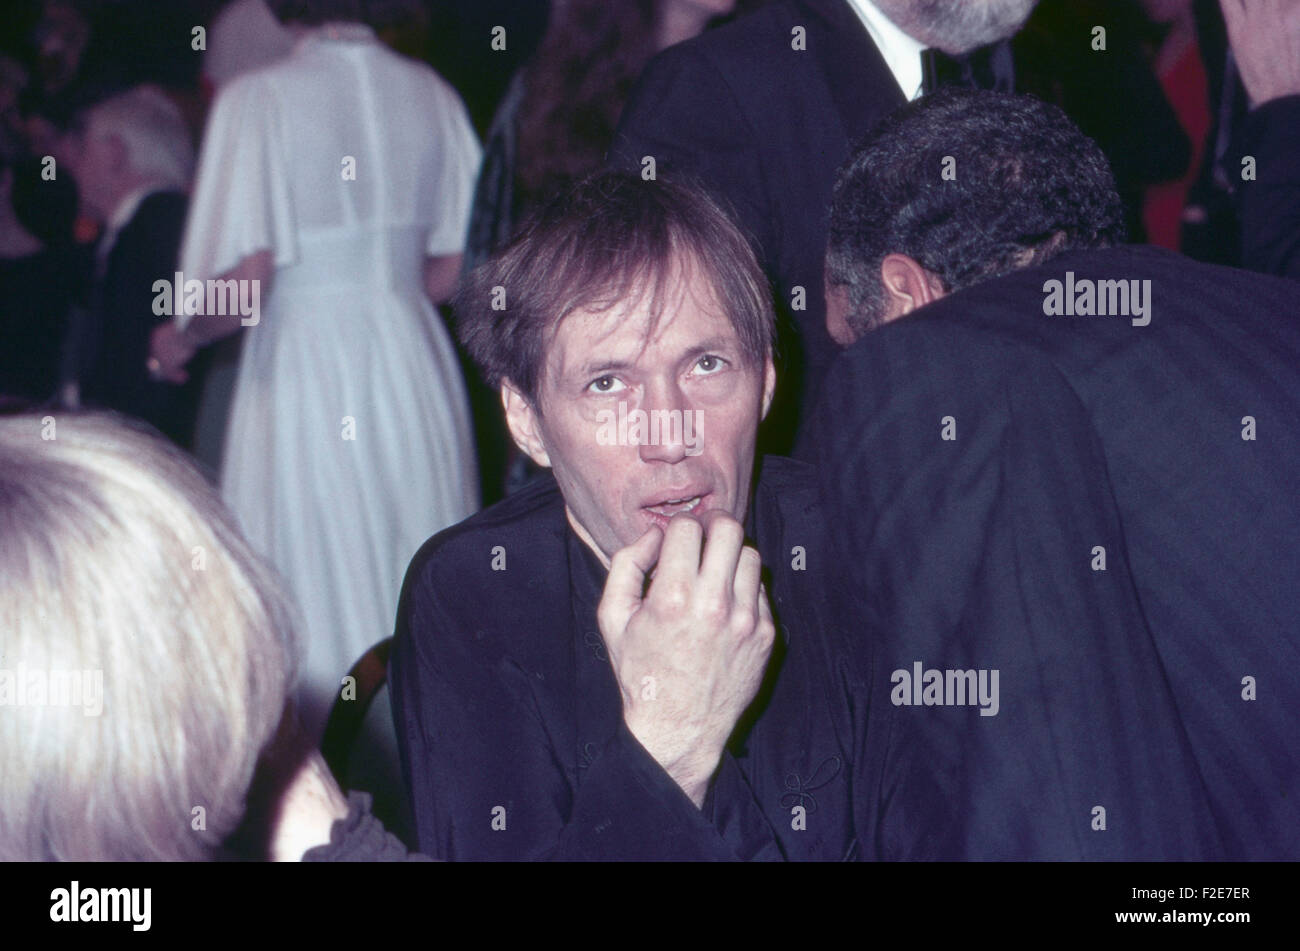 Der amerikanische Schauspieler David Carradine bei einer Abendveranstaltung, Deutschland 1970er Jahre. American actor David Carradine at an evening event, Germany 1970s. 24x36DiaV3 Stock Photo